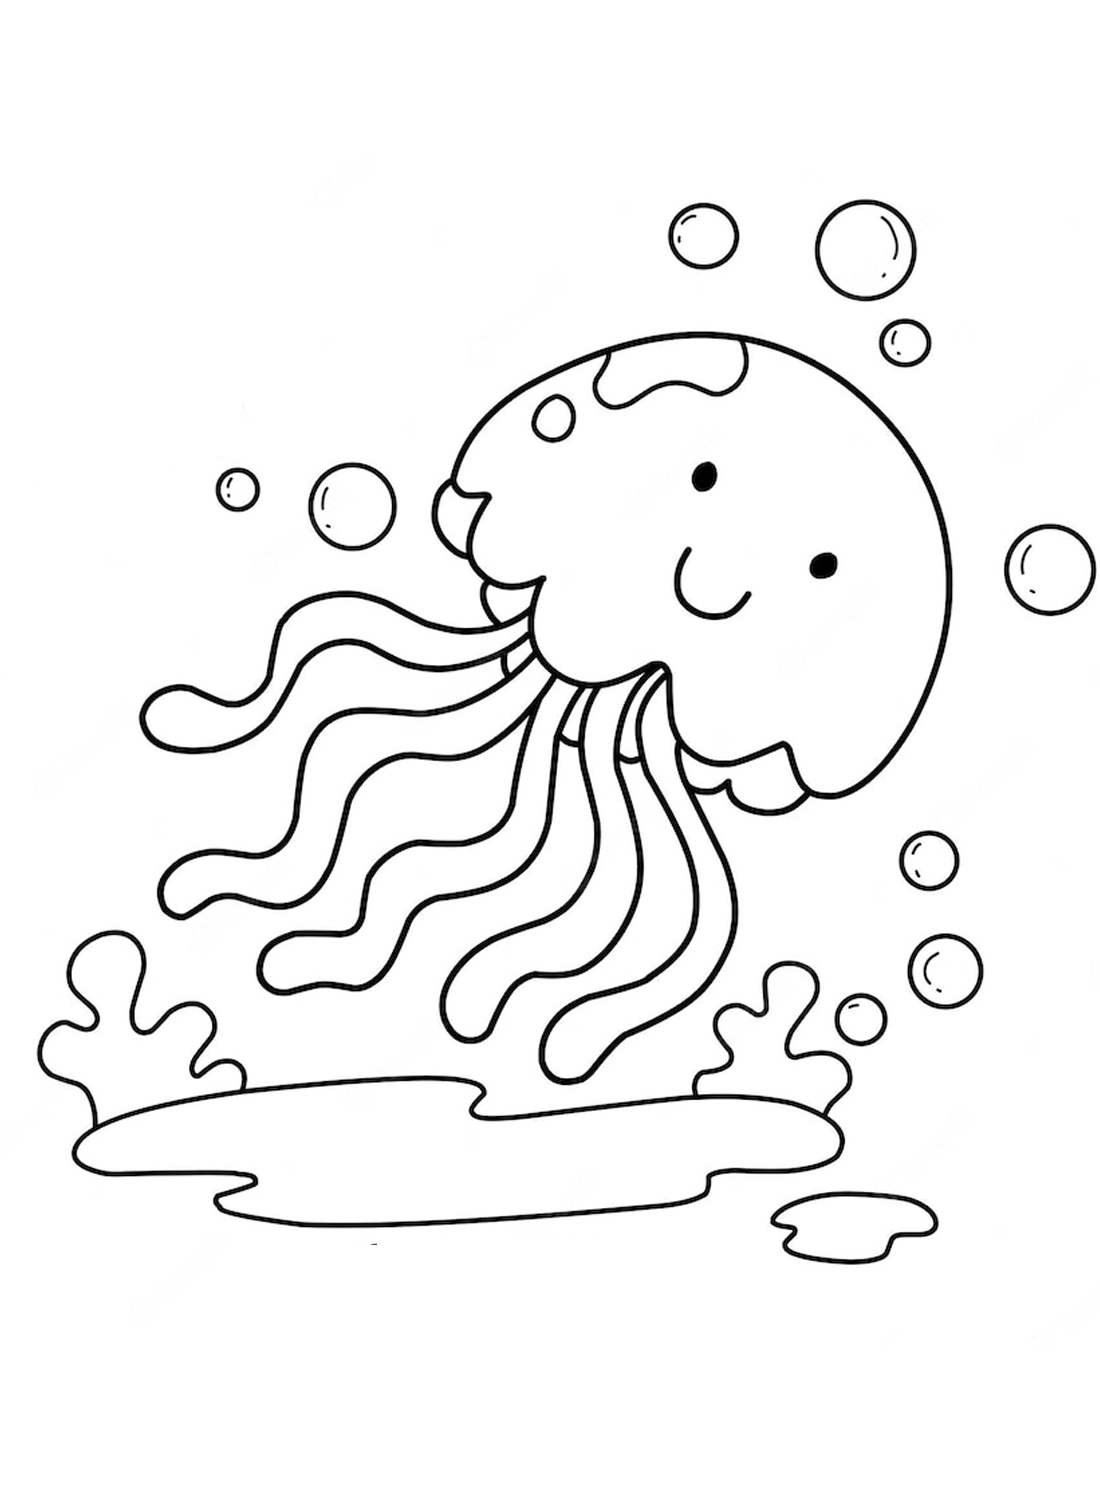 La medusa de Medusas